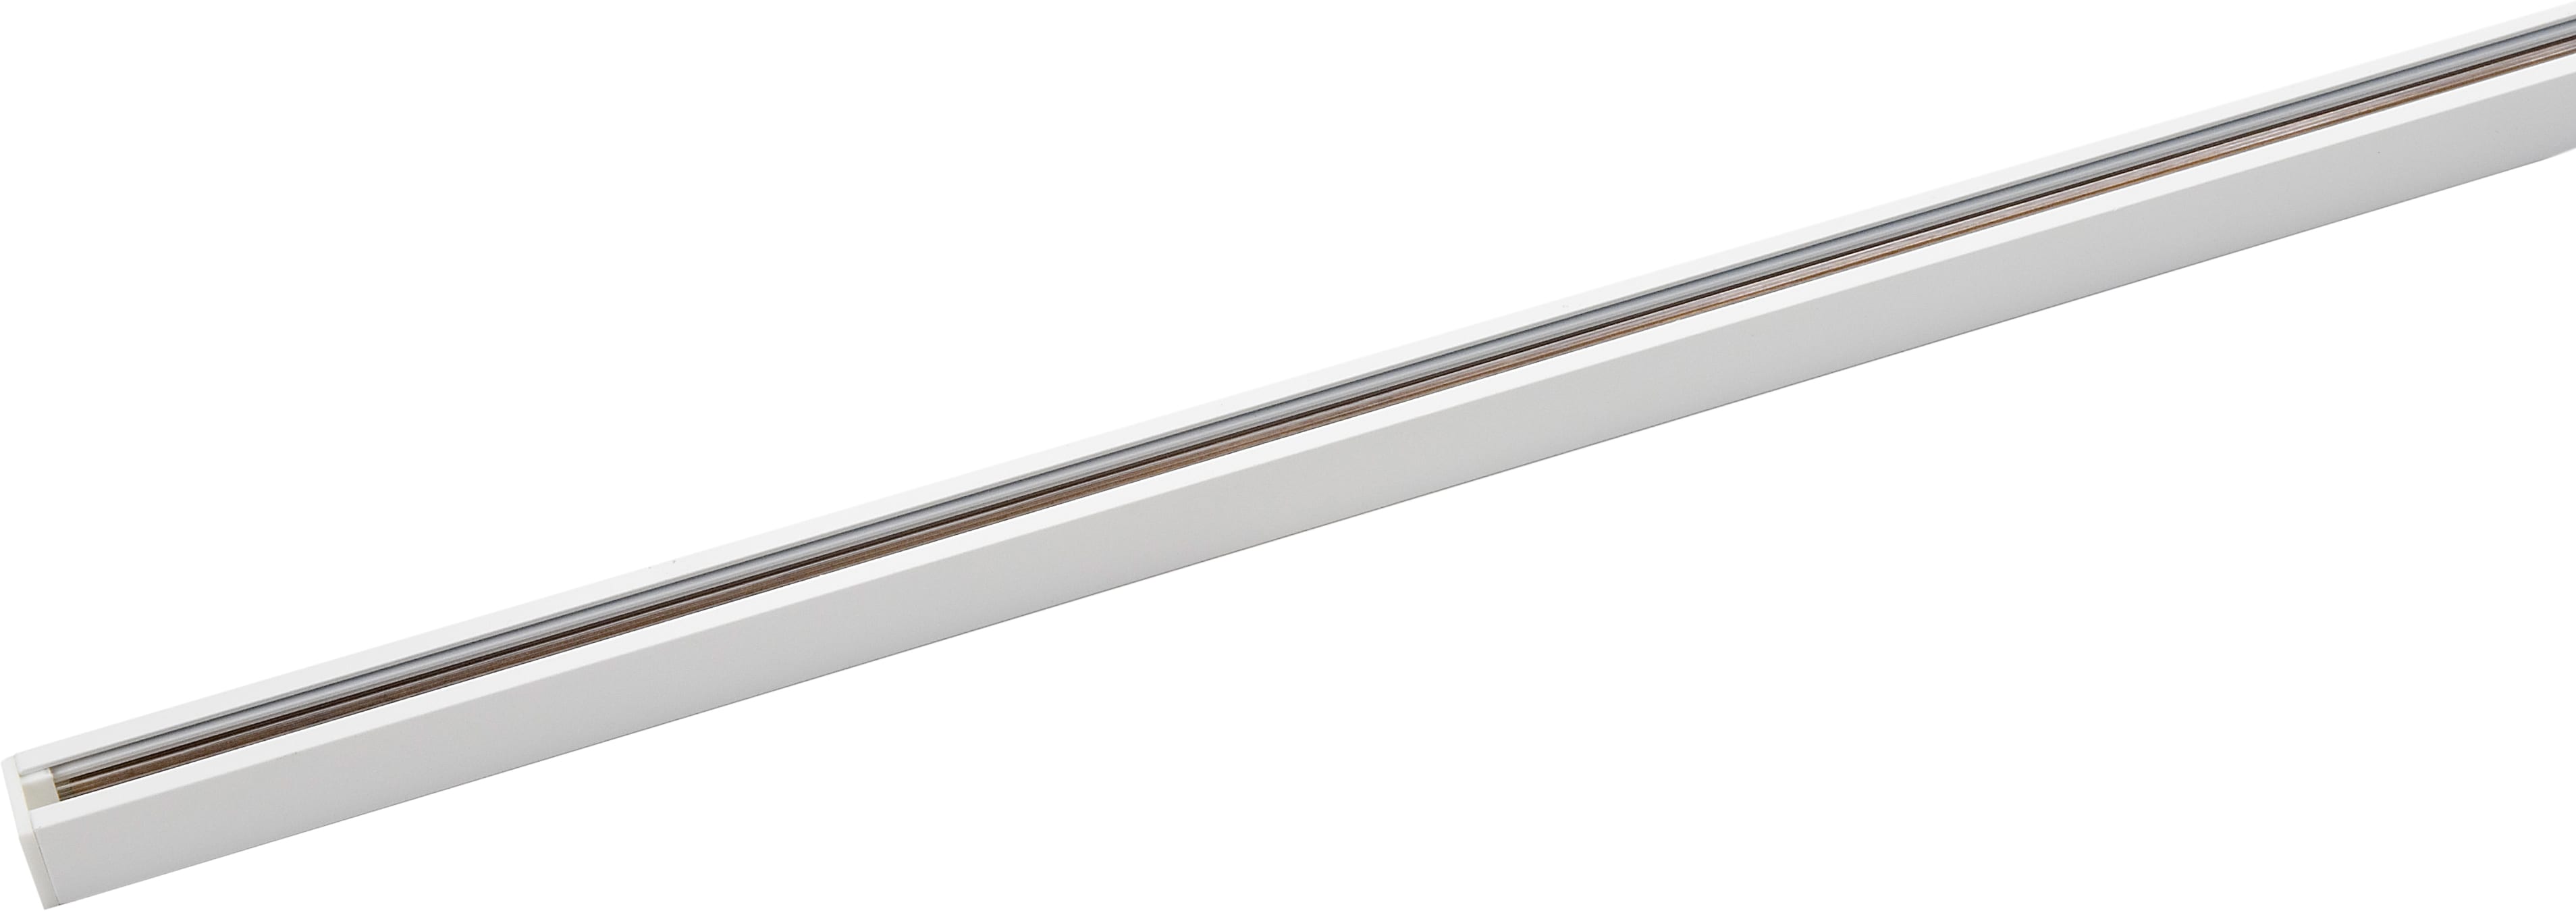 SG Lighting - Zip rail 1 allumage de 2 mètres blanc classe I 230V